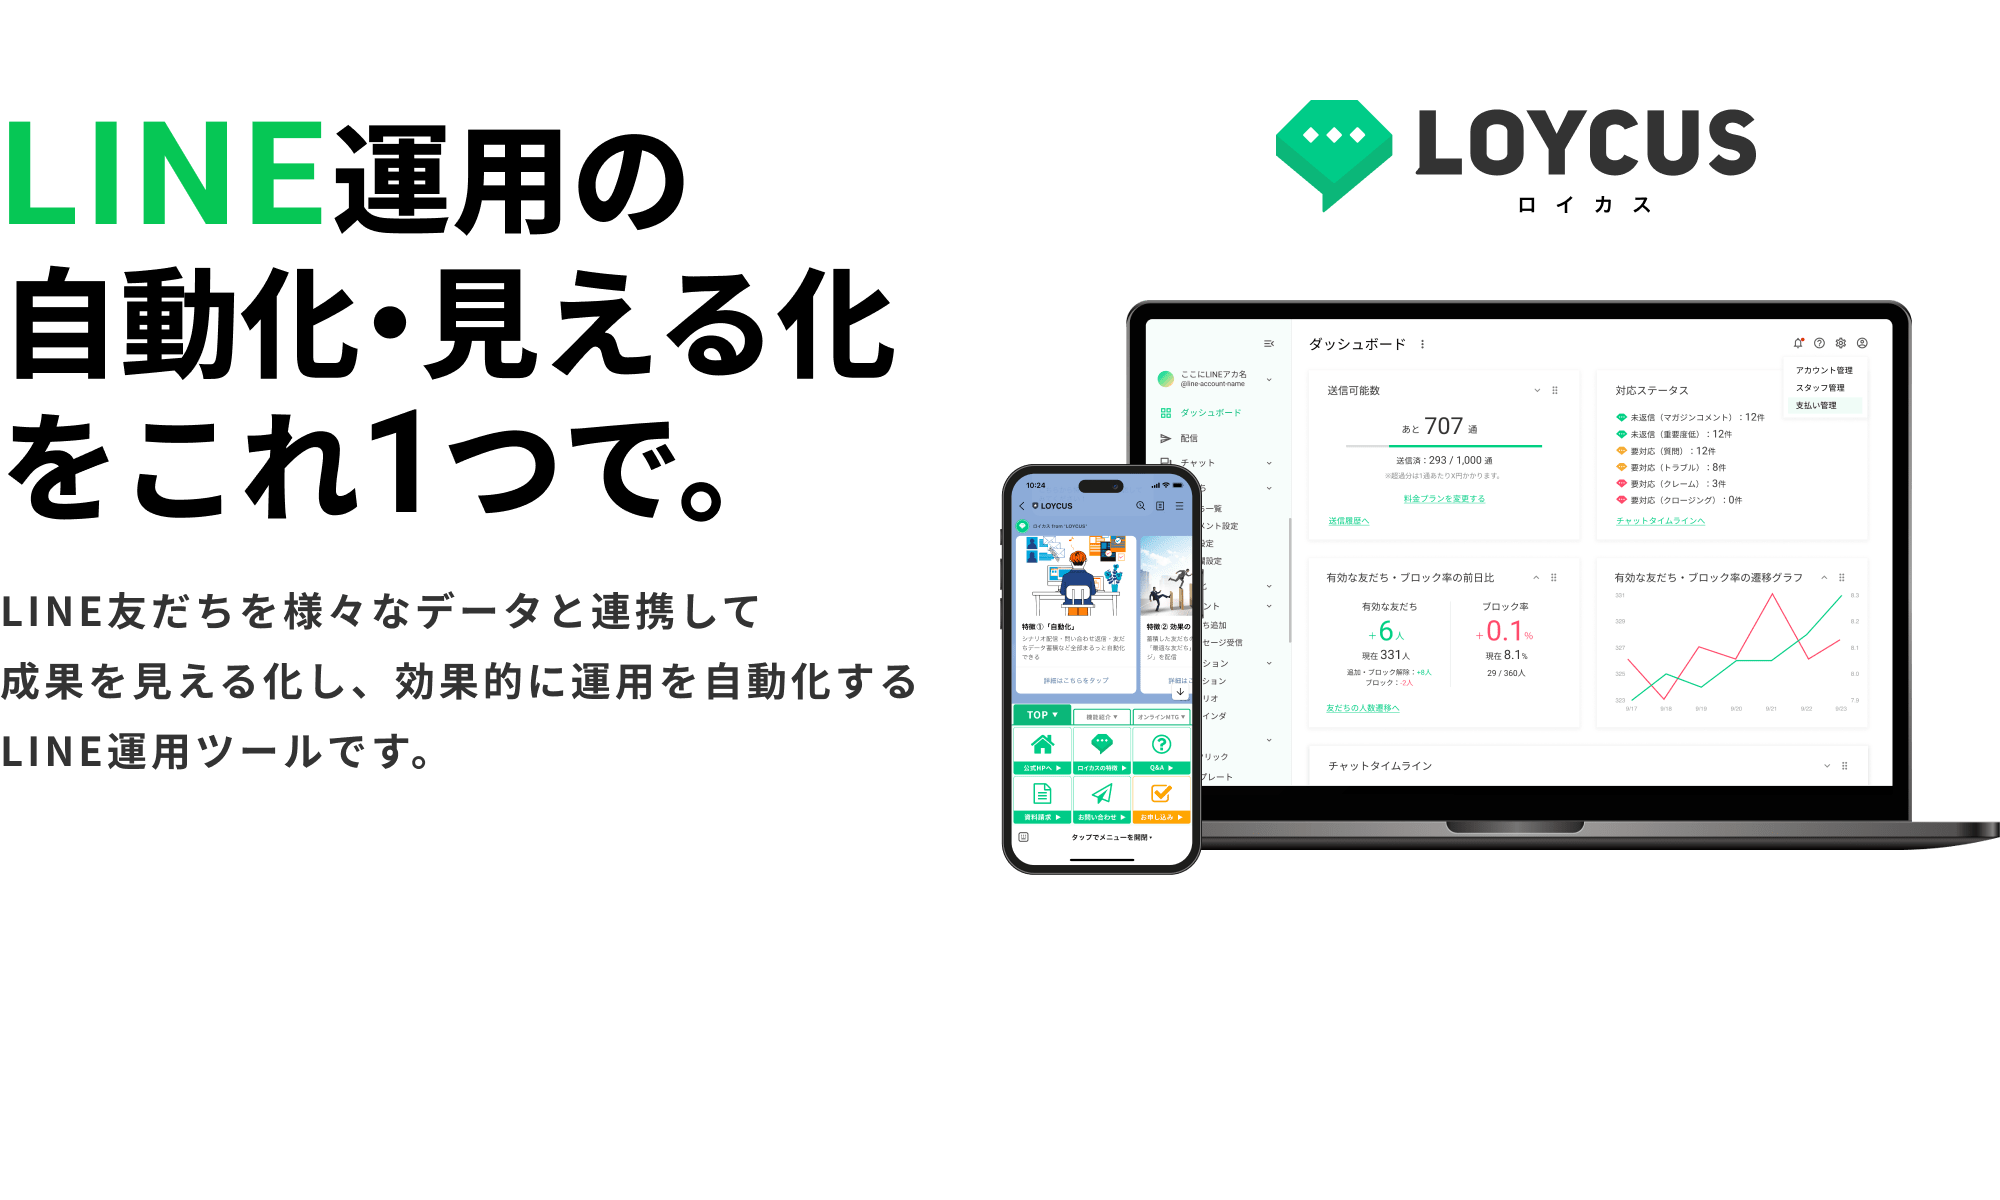 LOYCUS（ロイカス）｜LINE運用の自動化・見える化をこれ1つで。｜LINE友だちを様々なデータと連携して成果を見える化し、効果的に運用を自動化するLINE運用ツールです。